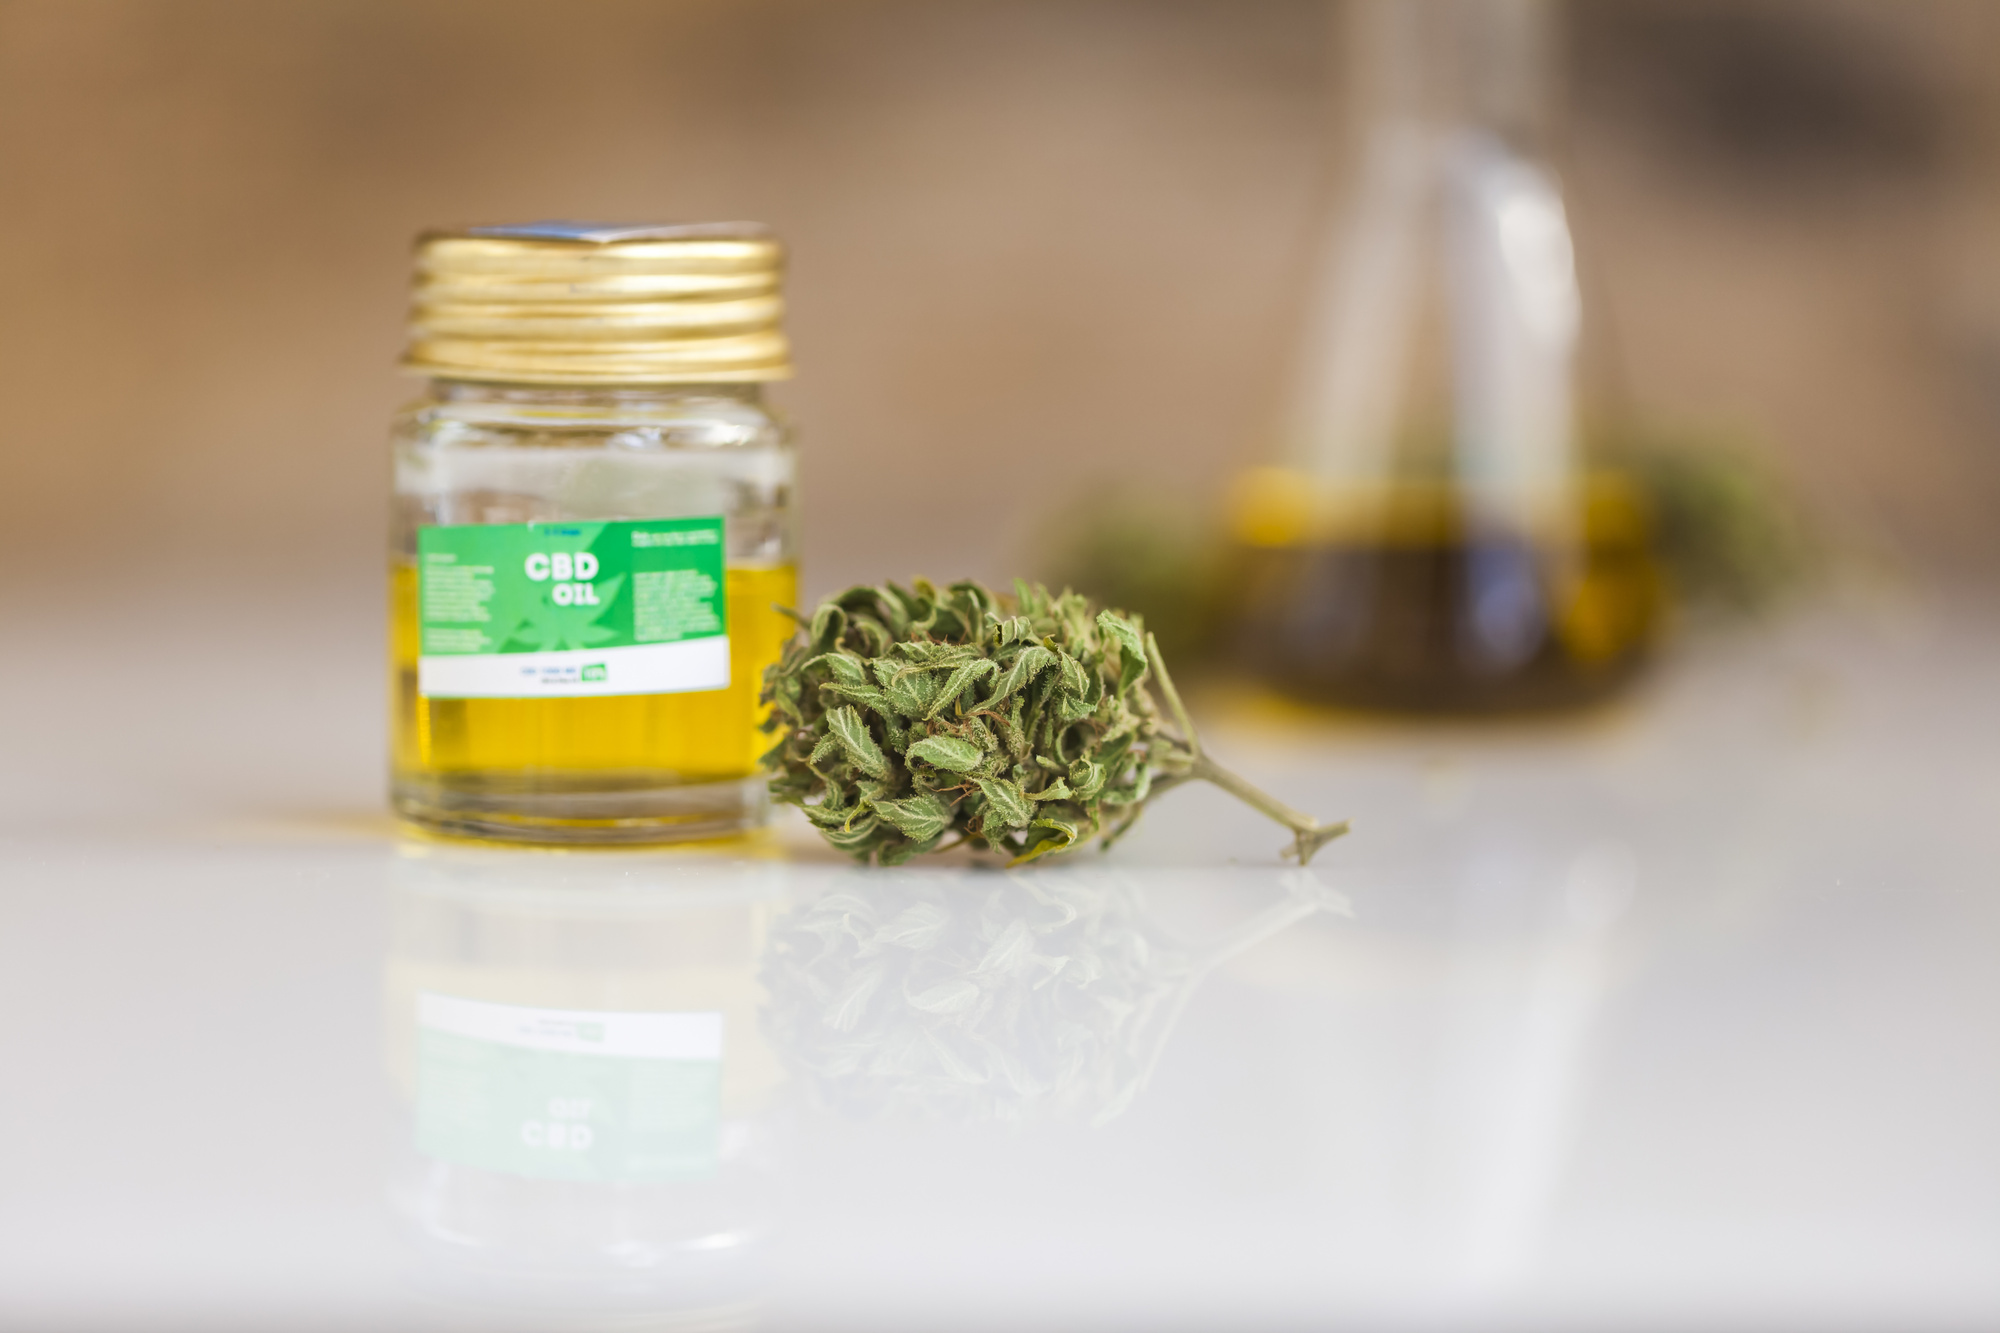 CBD oil and cannabis bud